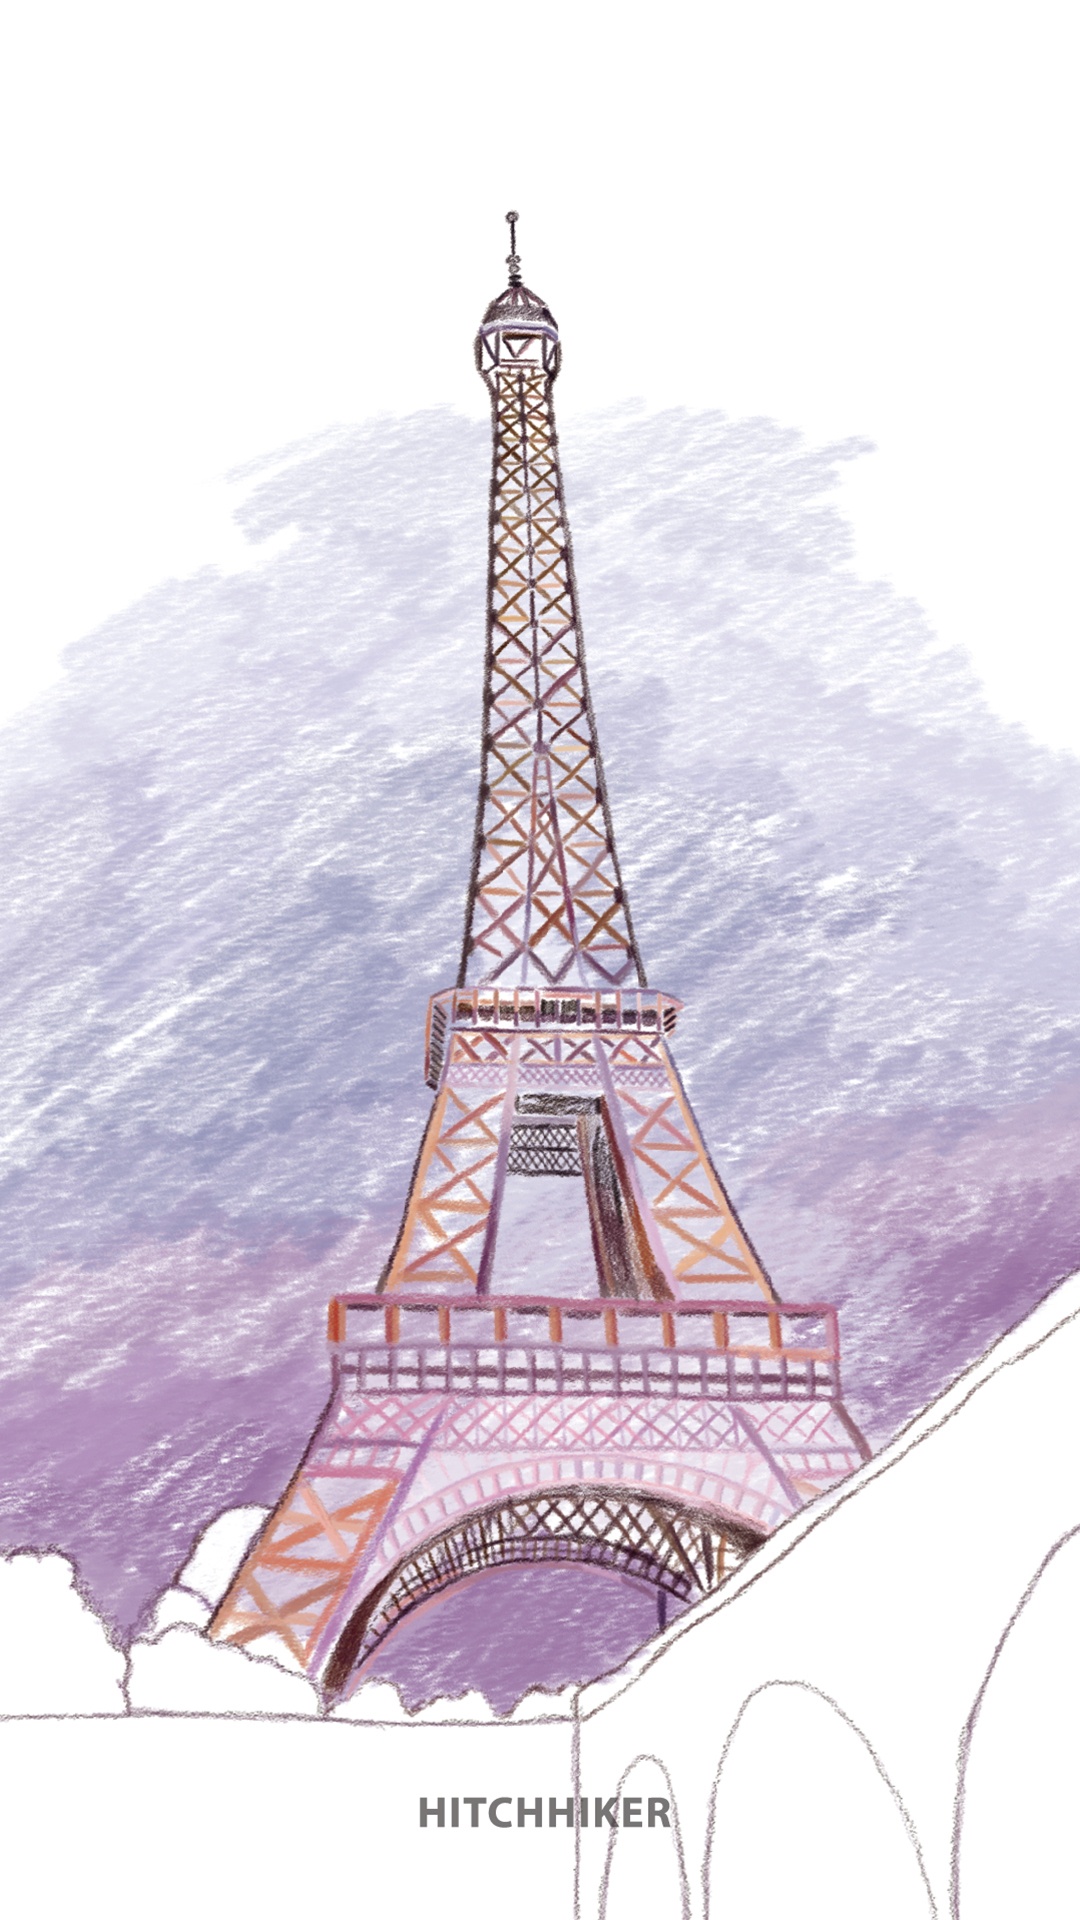 手绘法国埃菲尔铁塔图片素材免费下载 - 觅知网